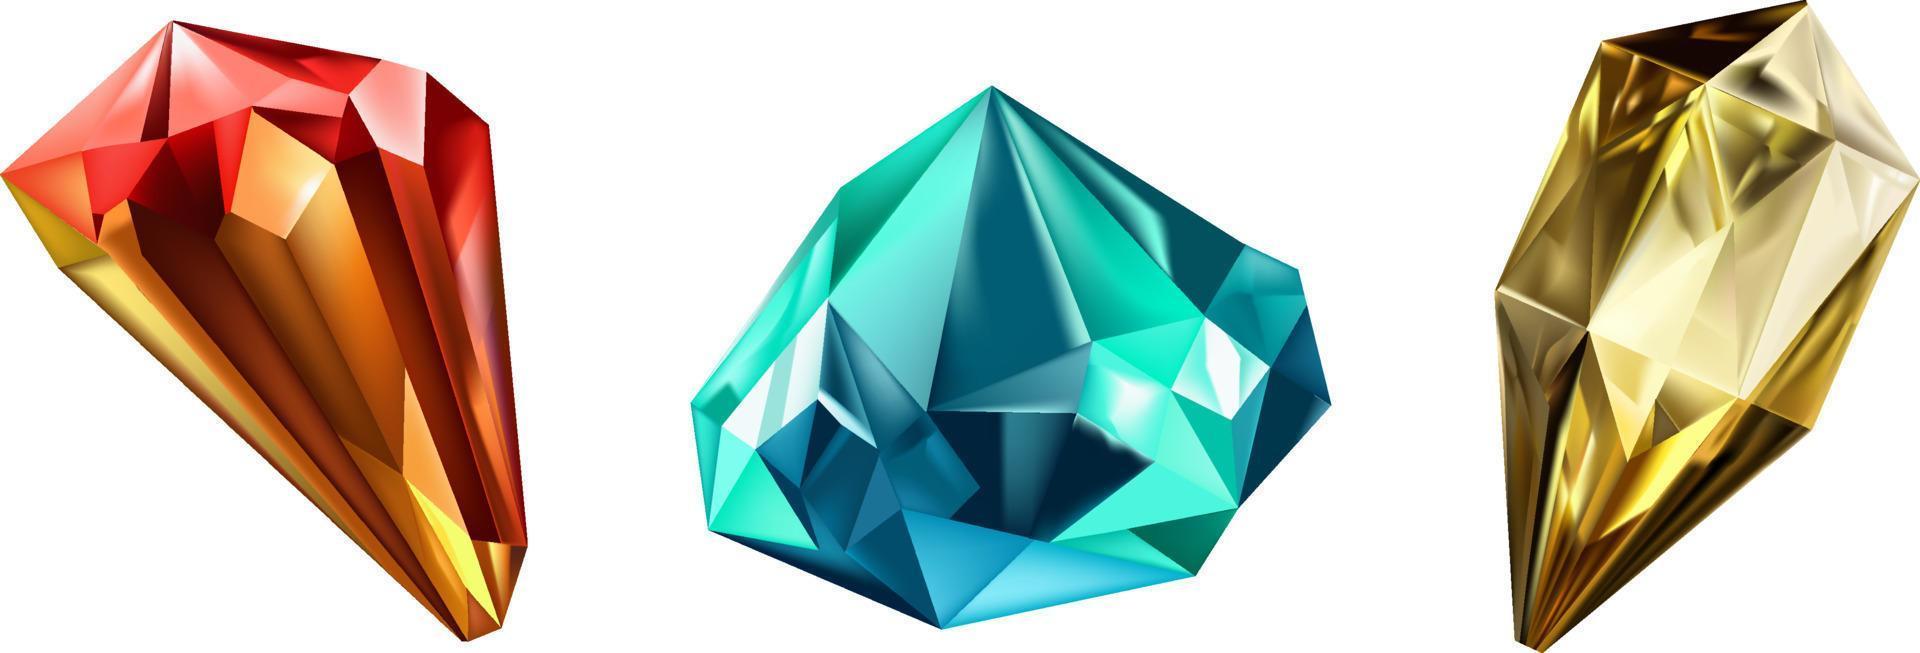 un colección de imágenes de diamantes de varios geométrico formas, colores y tallas.vidrio brillante cristales con diferente sombras reflejando luz.vector realista conjunto de resplandor piedra preciosa o vistoso hielo. vector